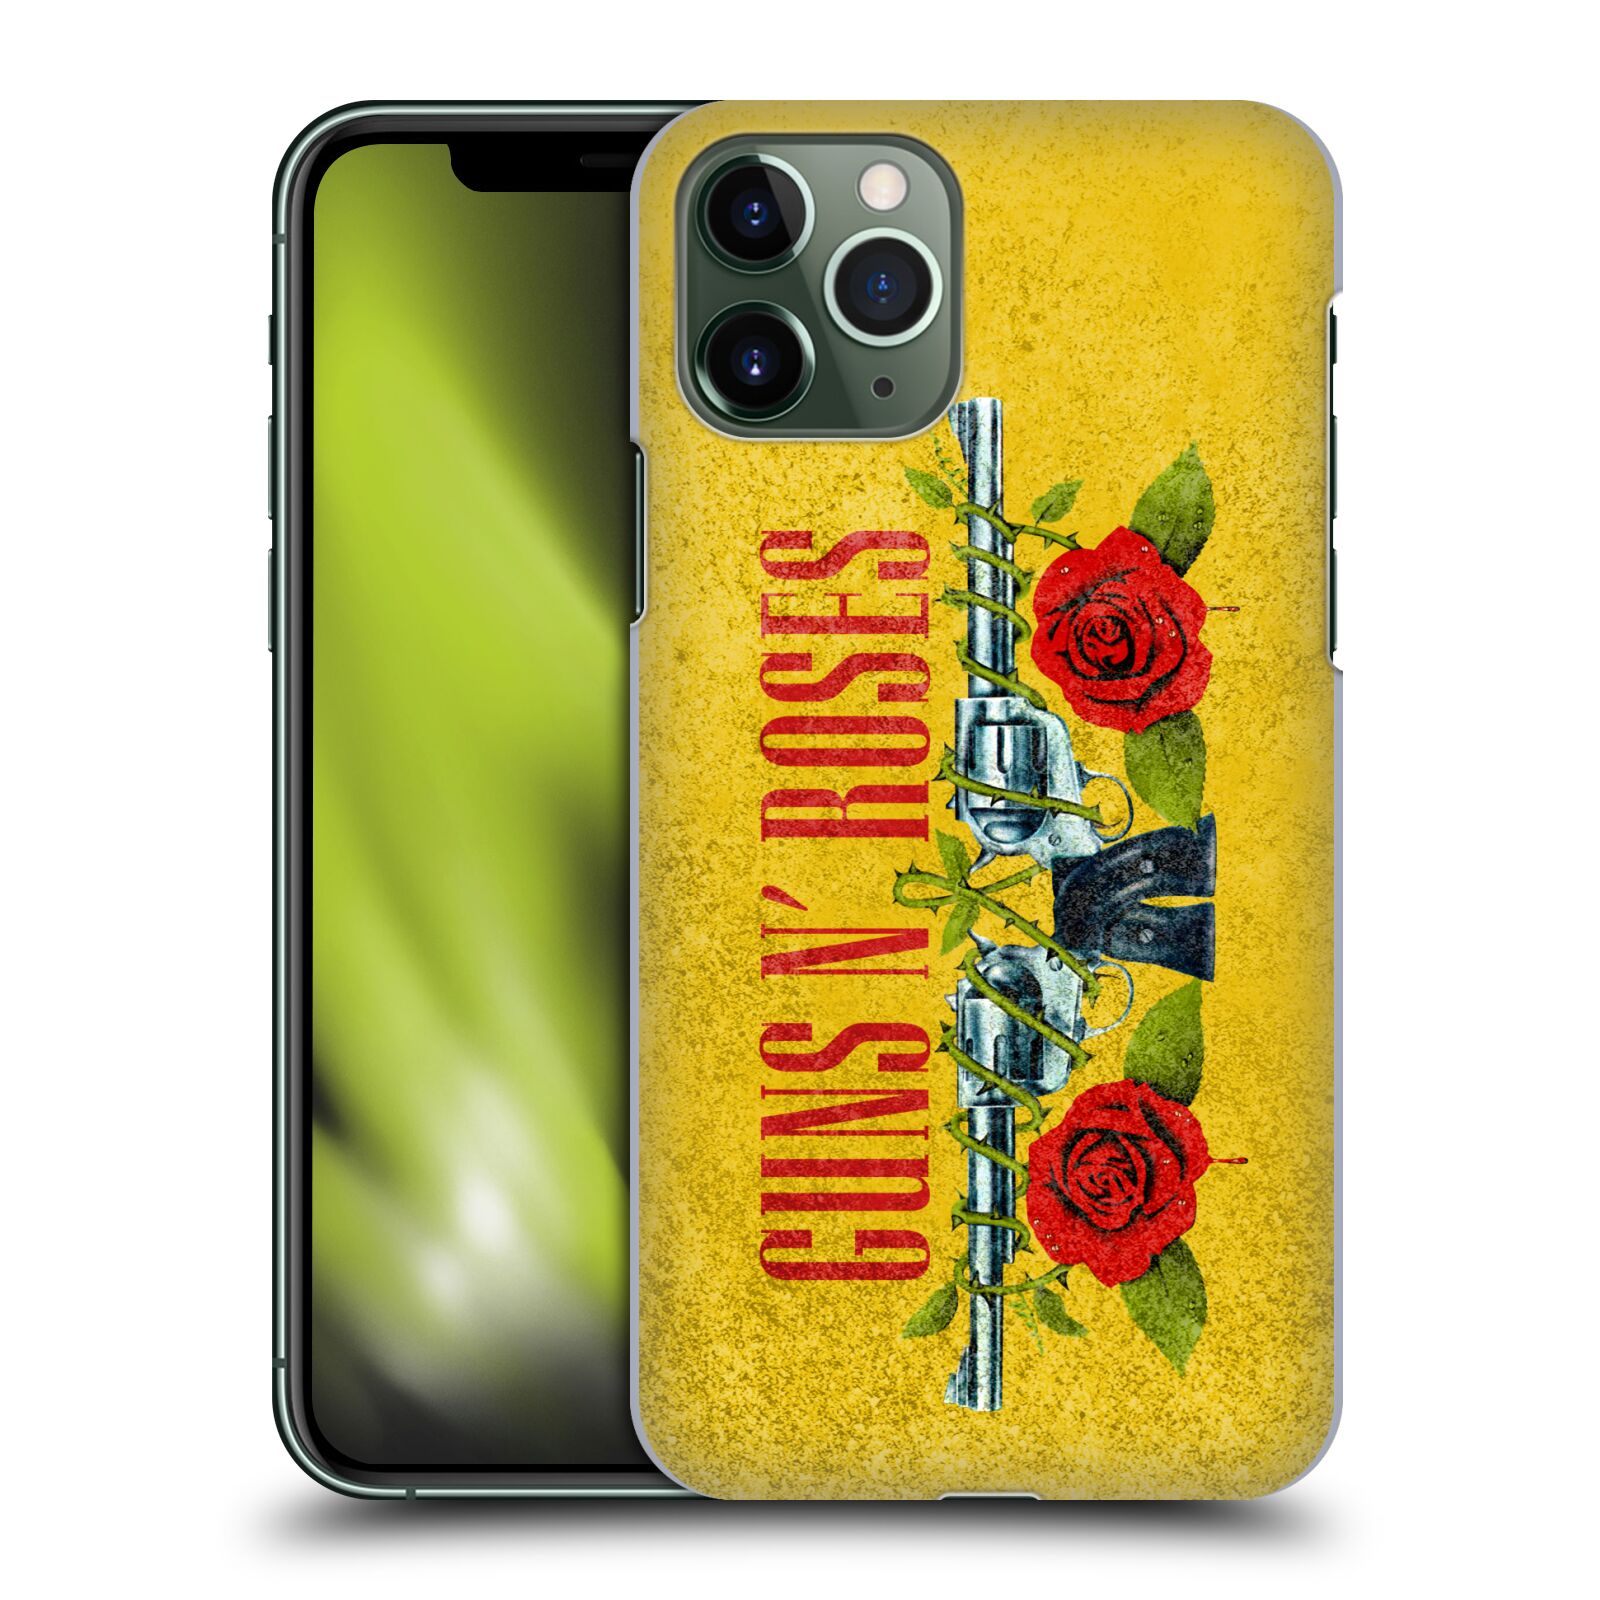 Pouzdro na mobil Apple Iphone 11 PRO - HEAD CASE - hudební skupina Guns N Roses pistole a růže žluté pozadí